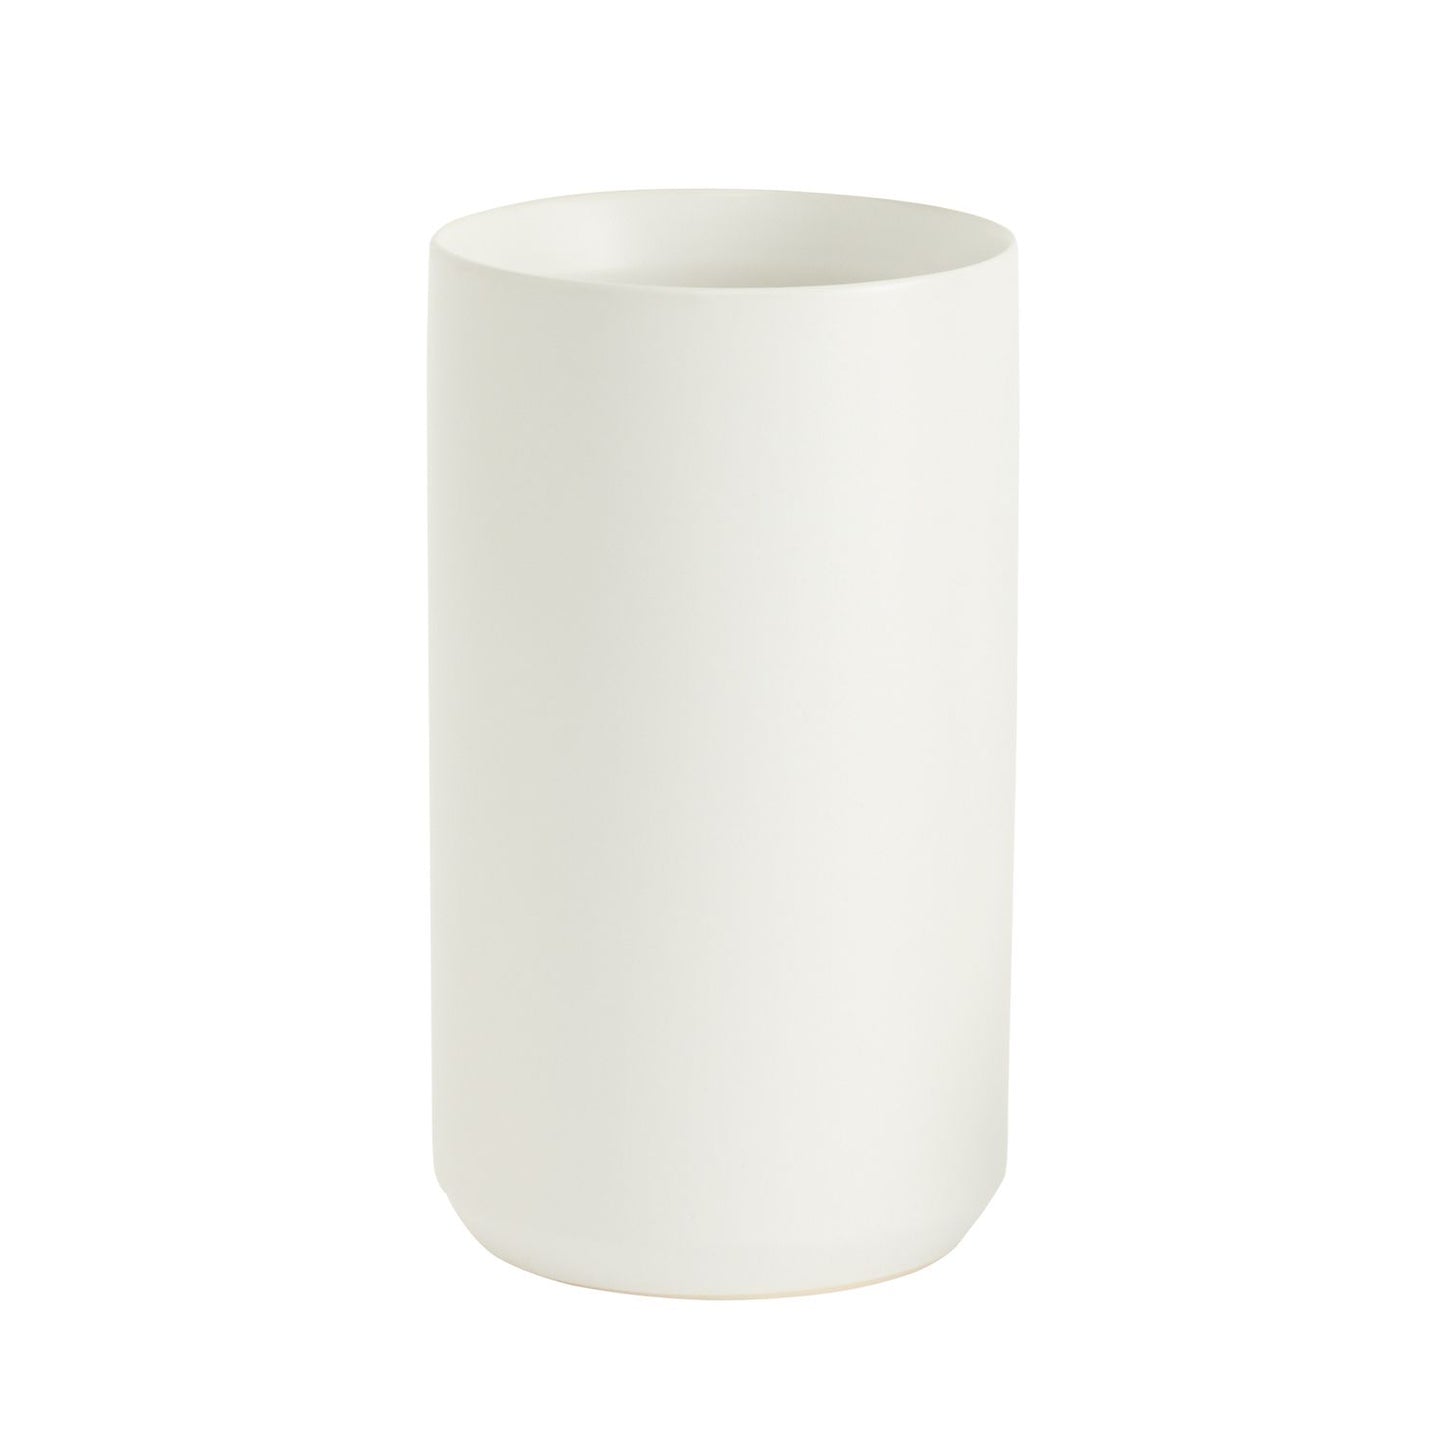 White Kendall Vase 4.5"x 8"